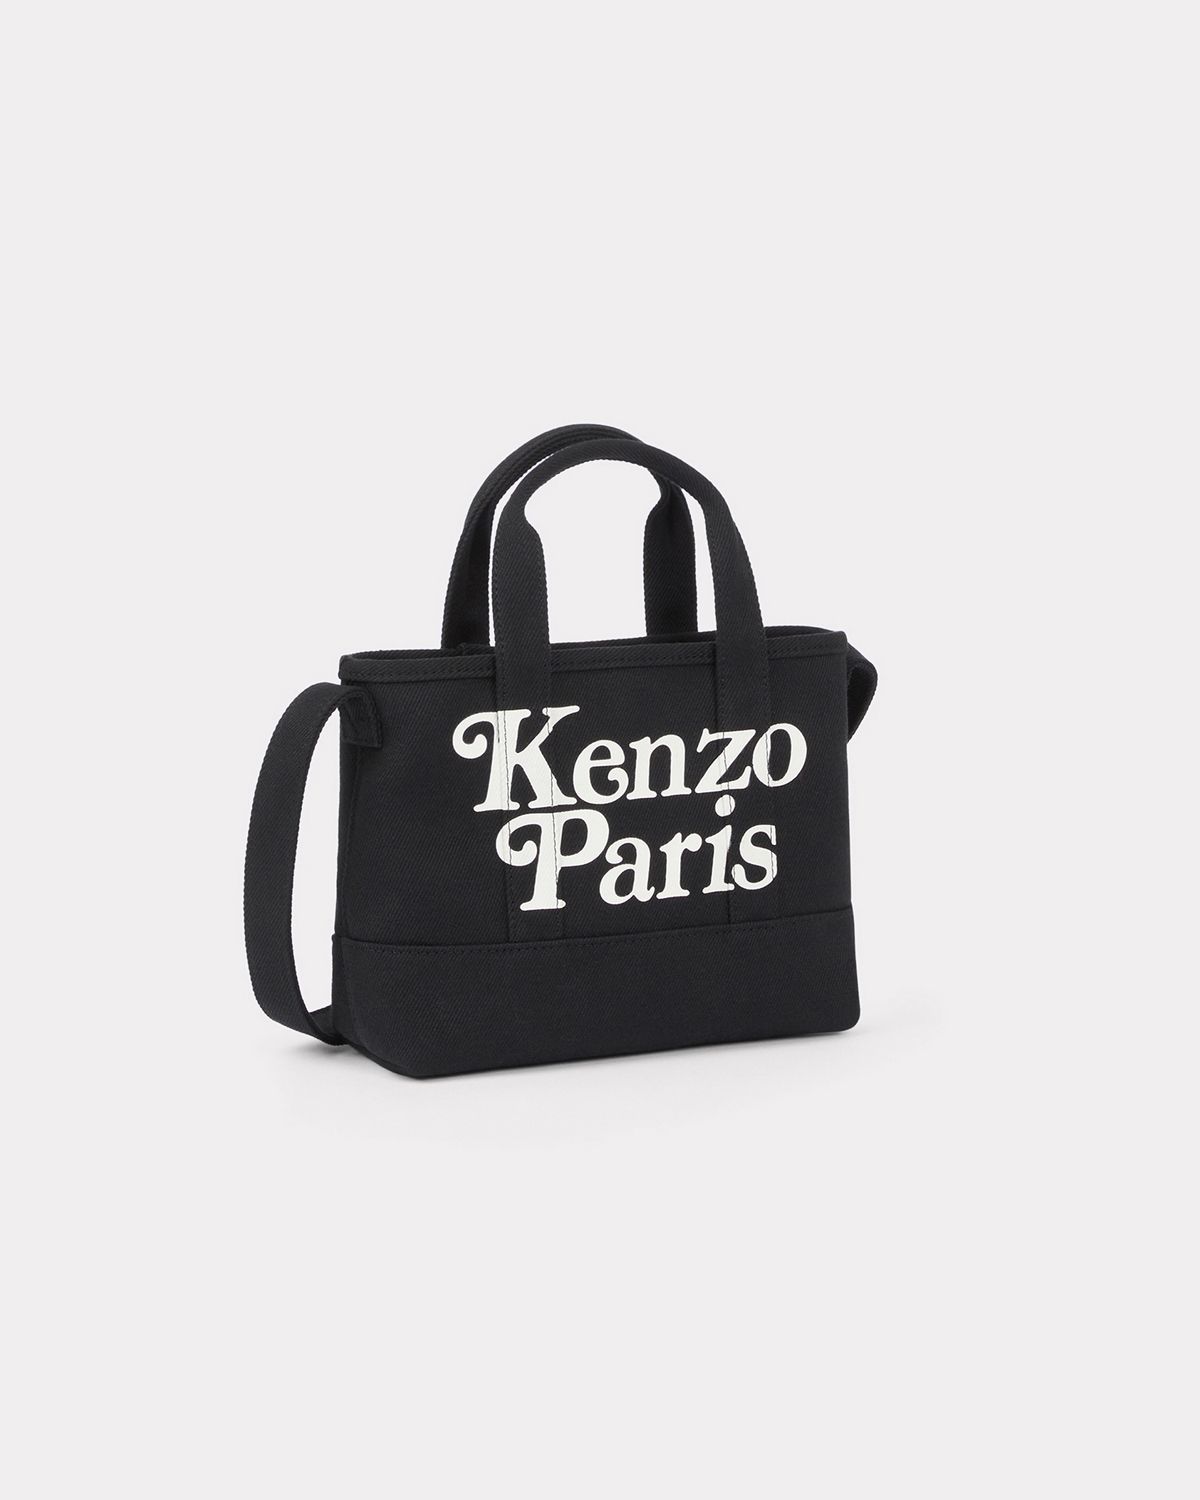 【ラスト1点】【限定】 KENZO x VERDY / SMALL TOTE BAG / スモールトートバック (ブラック) - ONE  SIZE(調整可能)